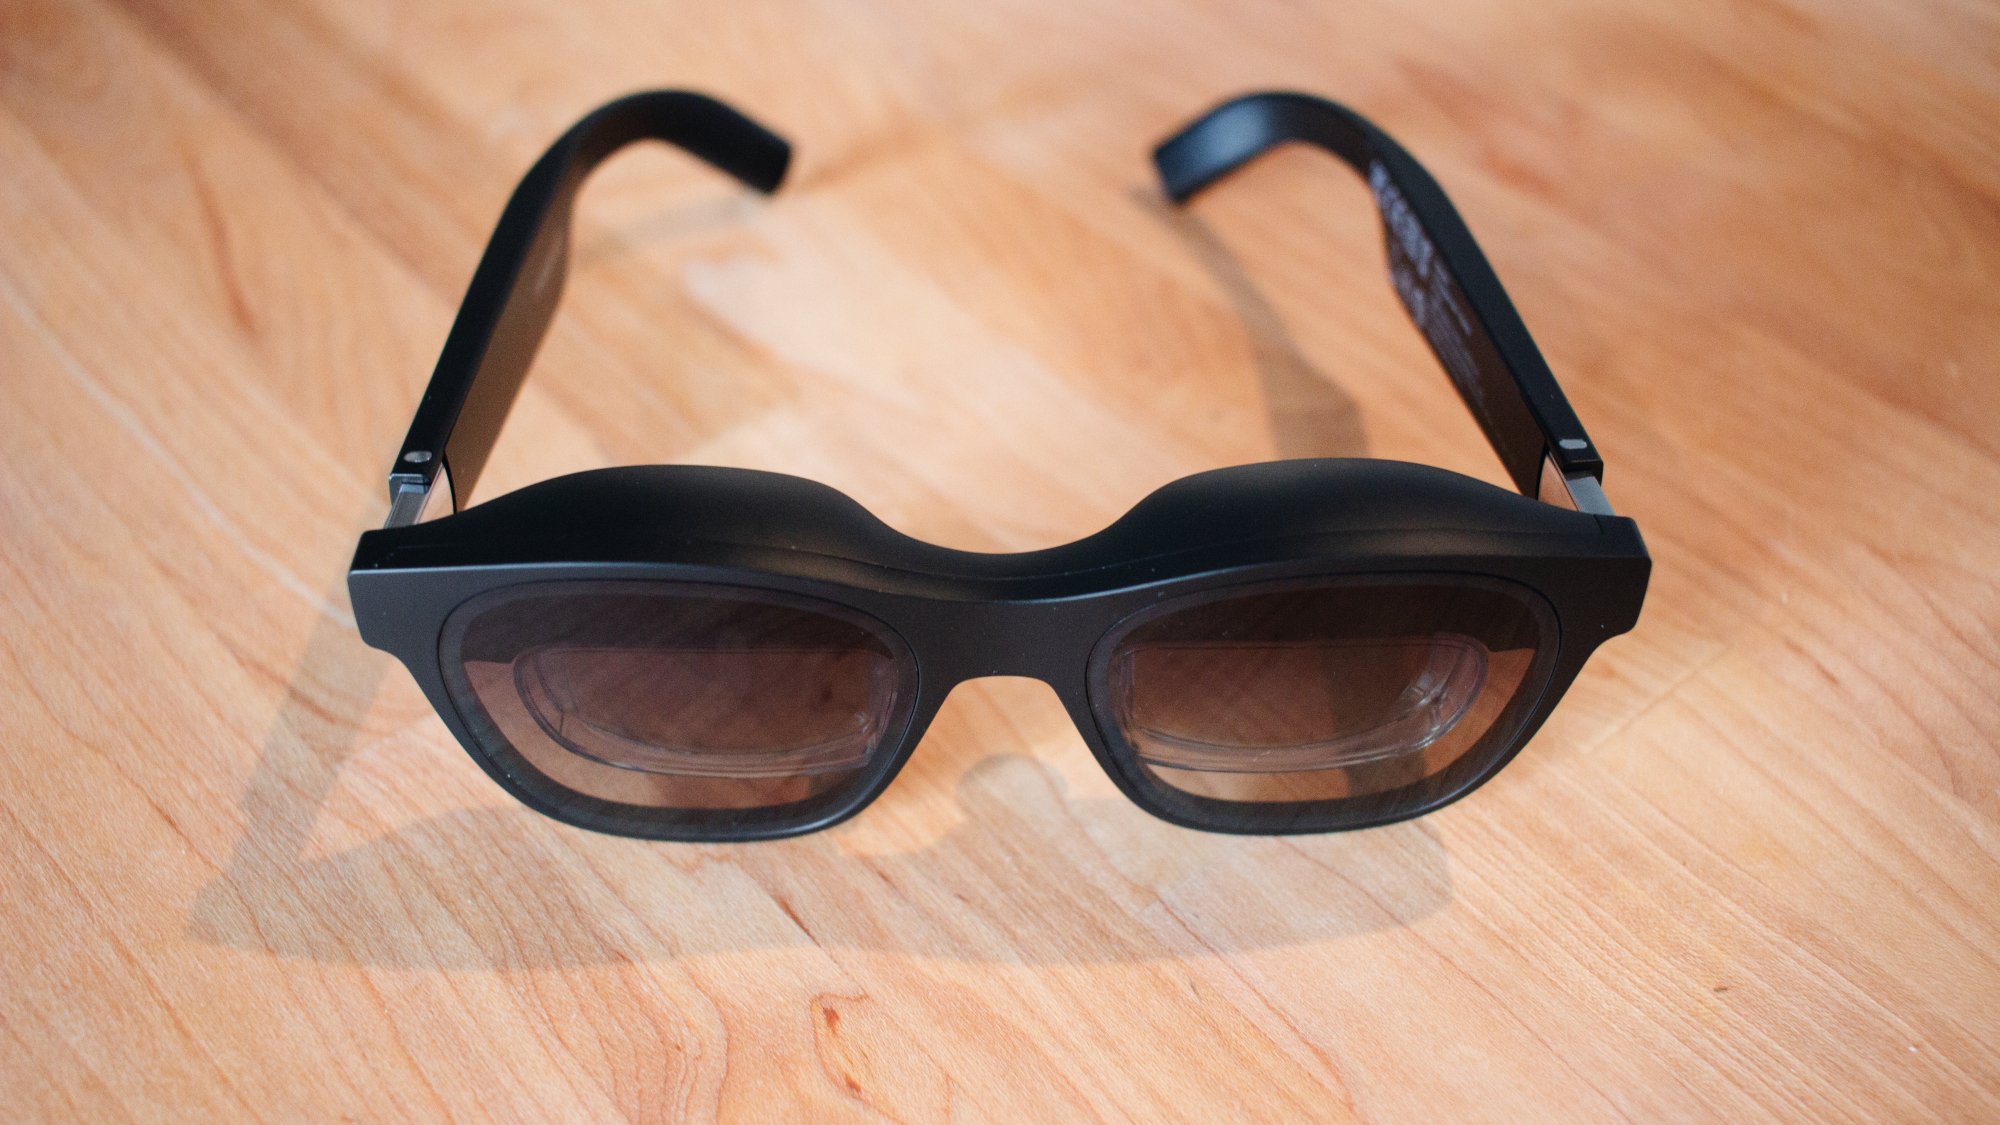 par de gafas de realidad aumentada tintadas con material adicional para sombrear encima de los ojos